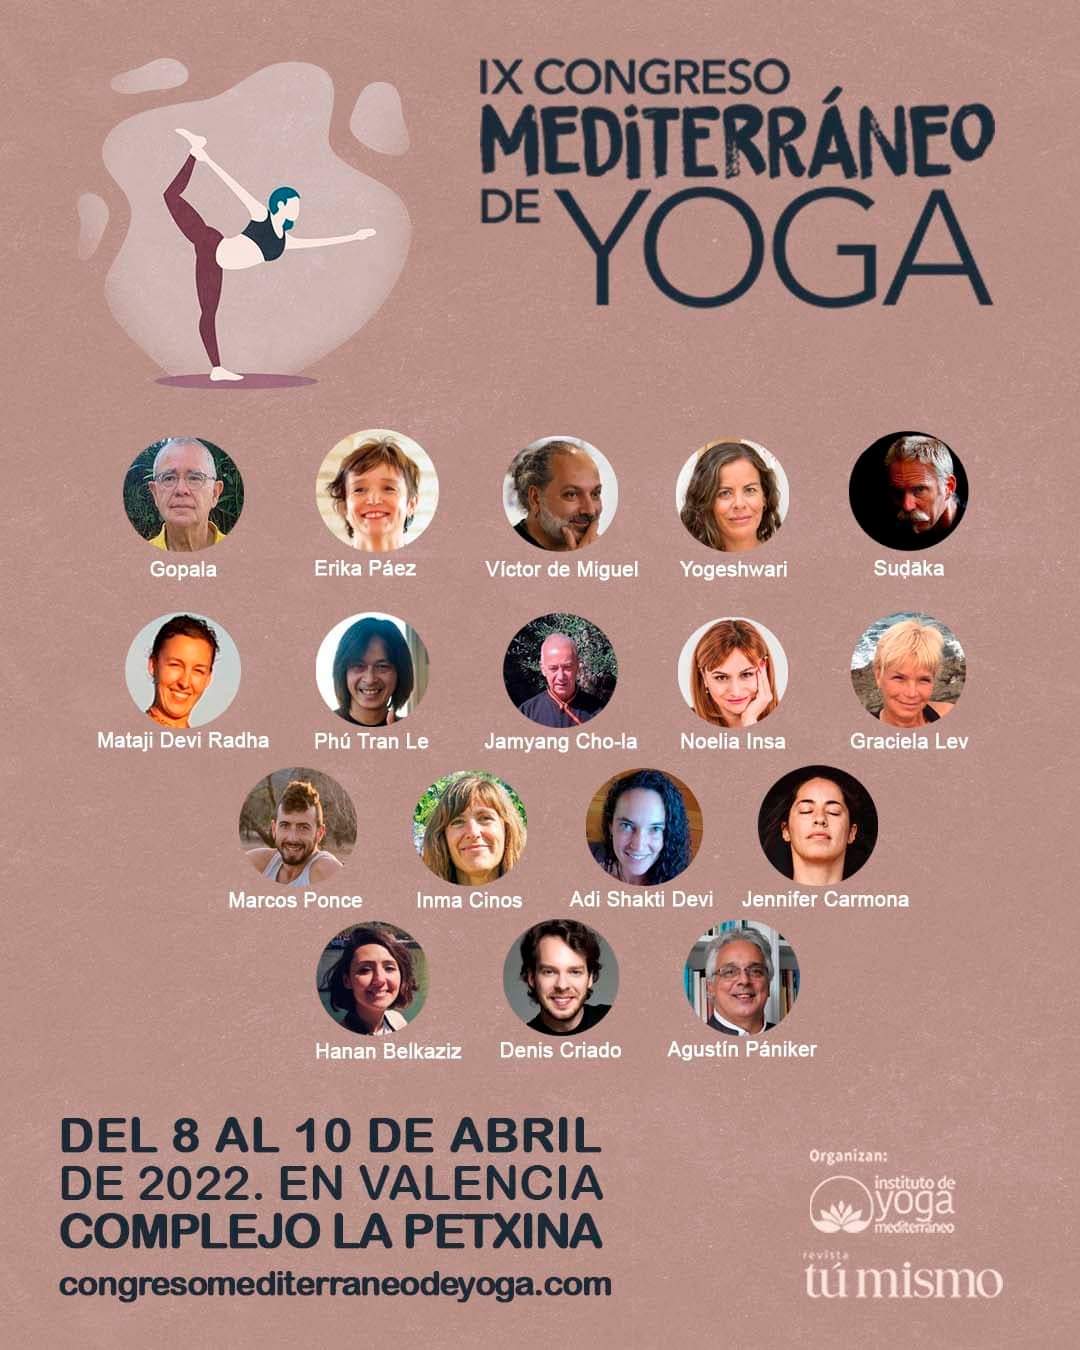 IX Congreso Mediterraneo de Yoga abril 2022